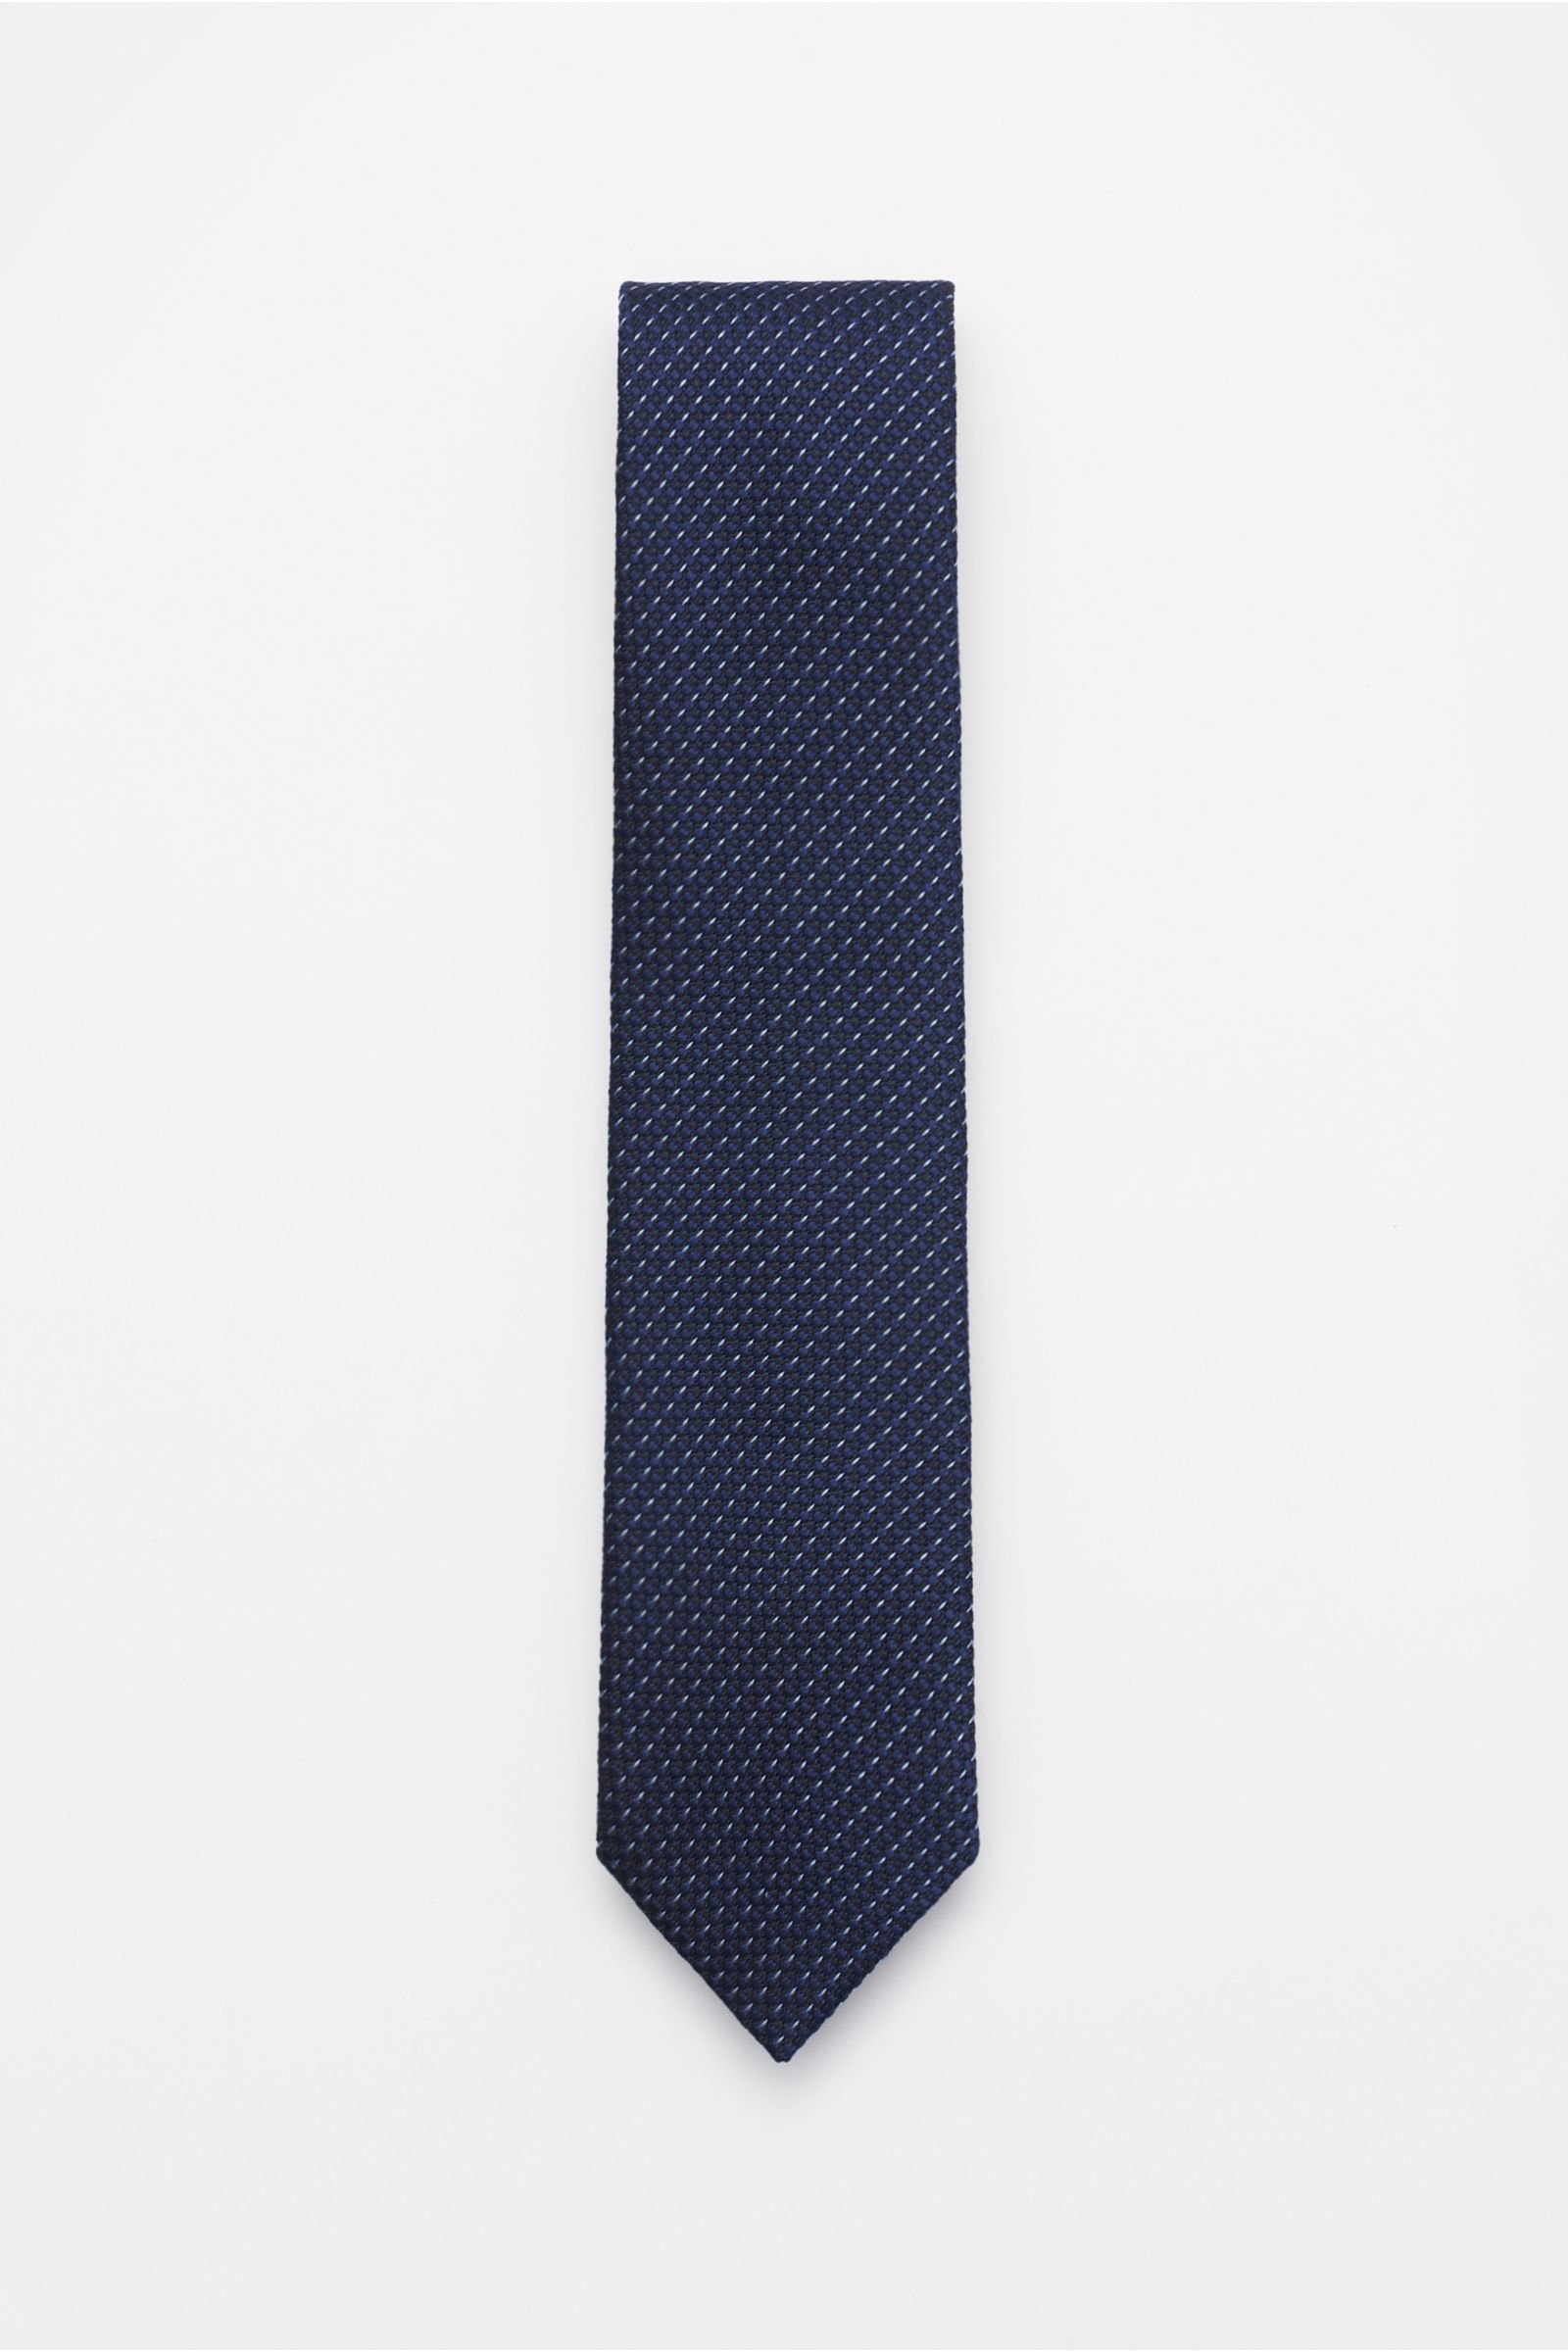 Silk tie navy/black/light blue patterned